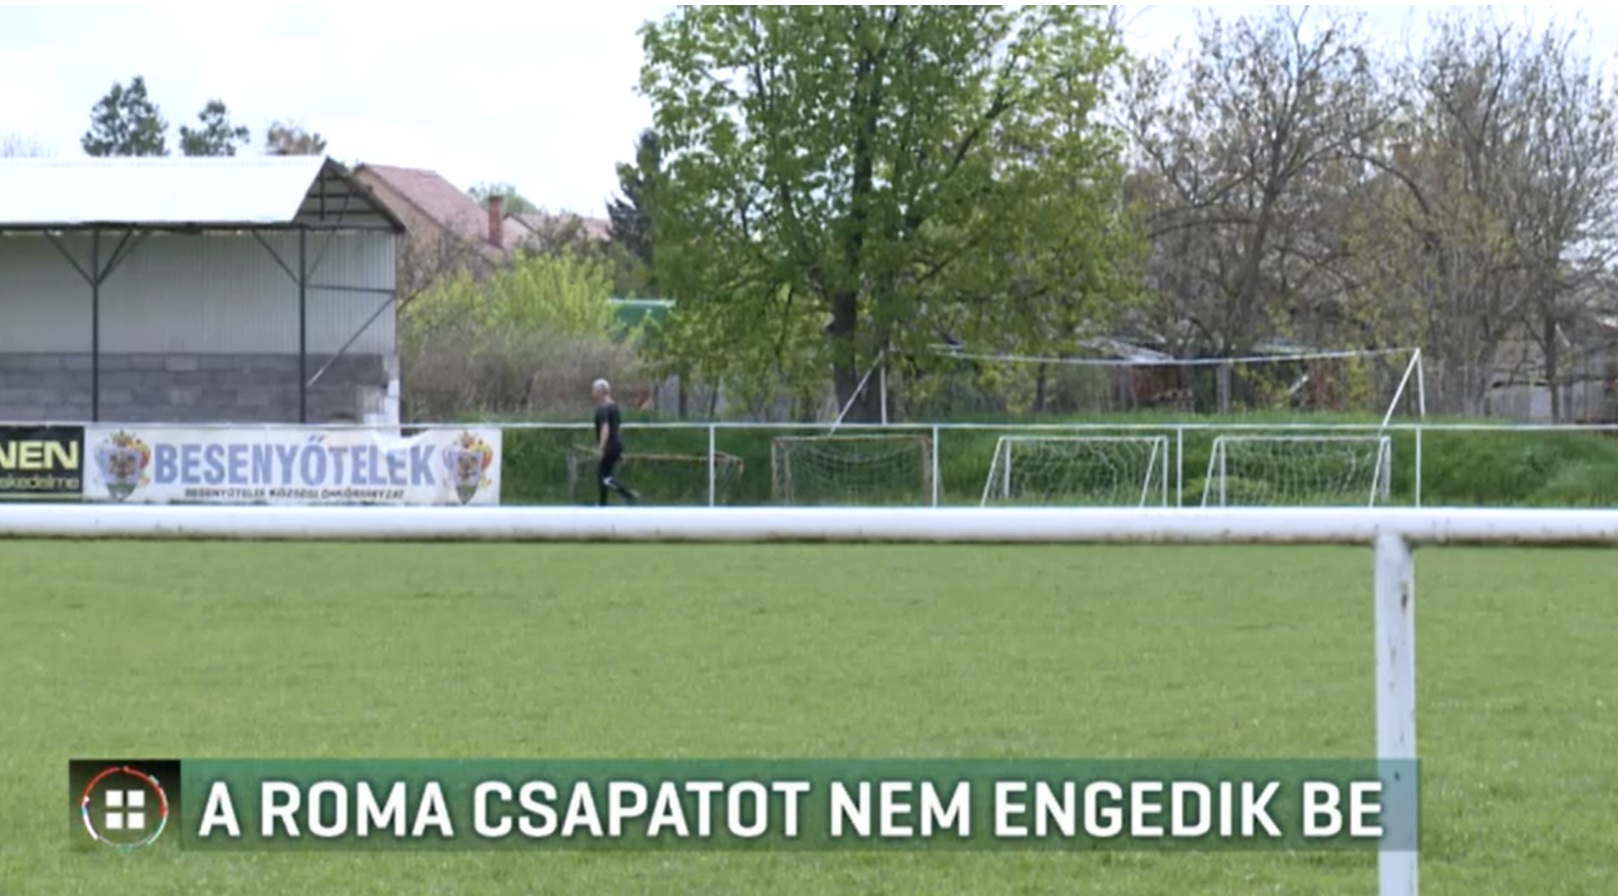 Nem engedi a polgármester, hogy a roma csapat is használja a focipályát Besenyőtelken